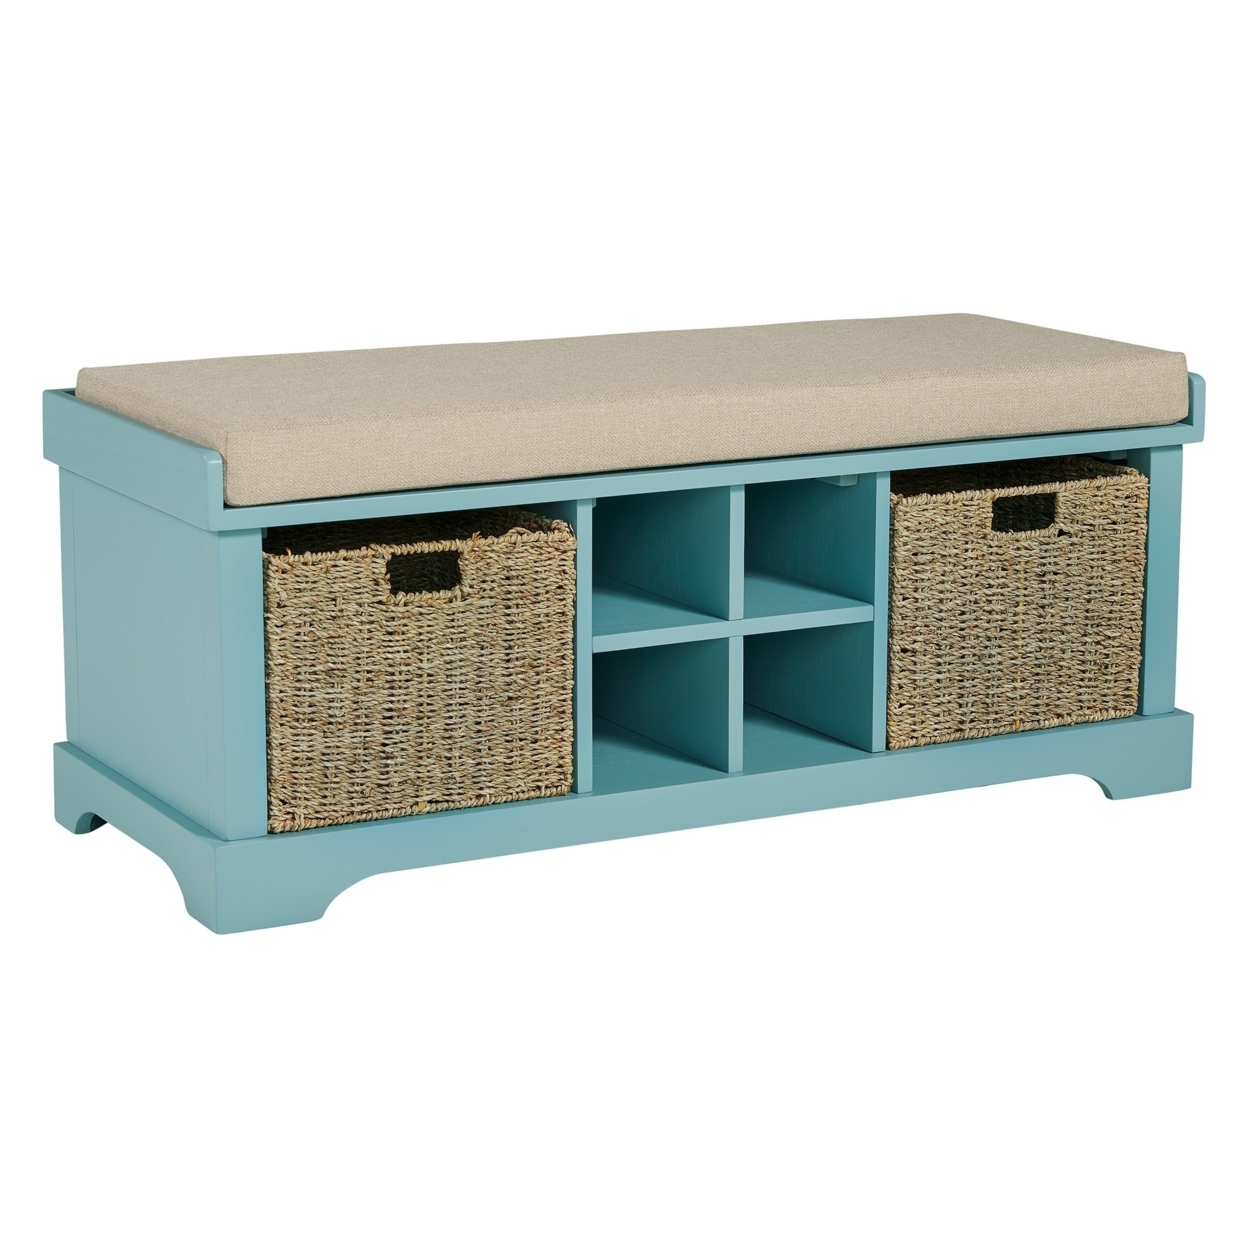 Dio 42 Inch Storage Bench, Cushioned Top, 2 Wicker Baskets, Blue, Beige- Saltoro Sherpi